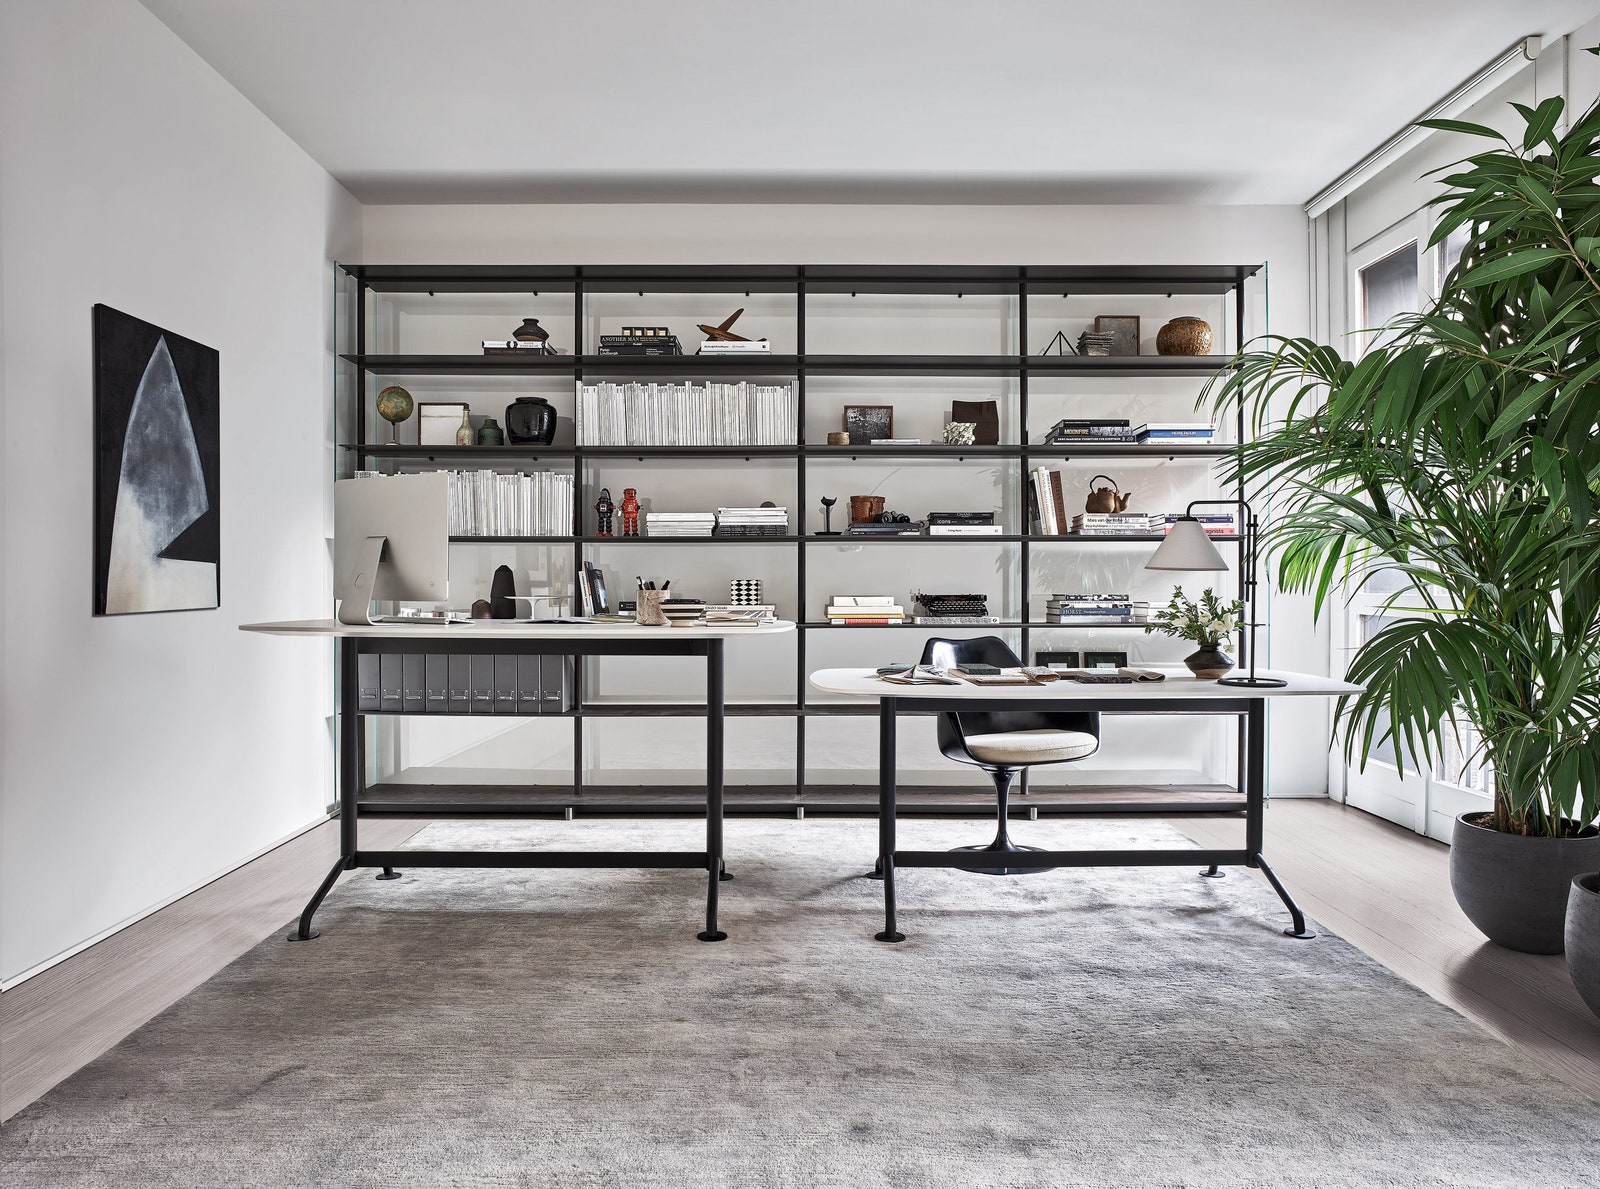 Новая коллекция мебели для домашнего офиса от Knoll